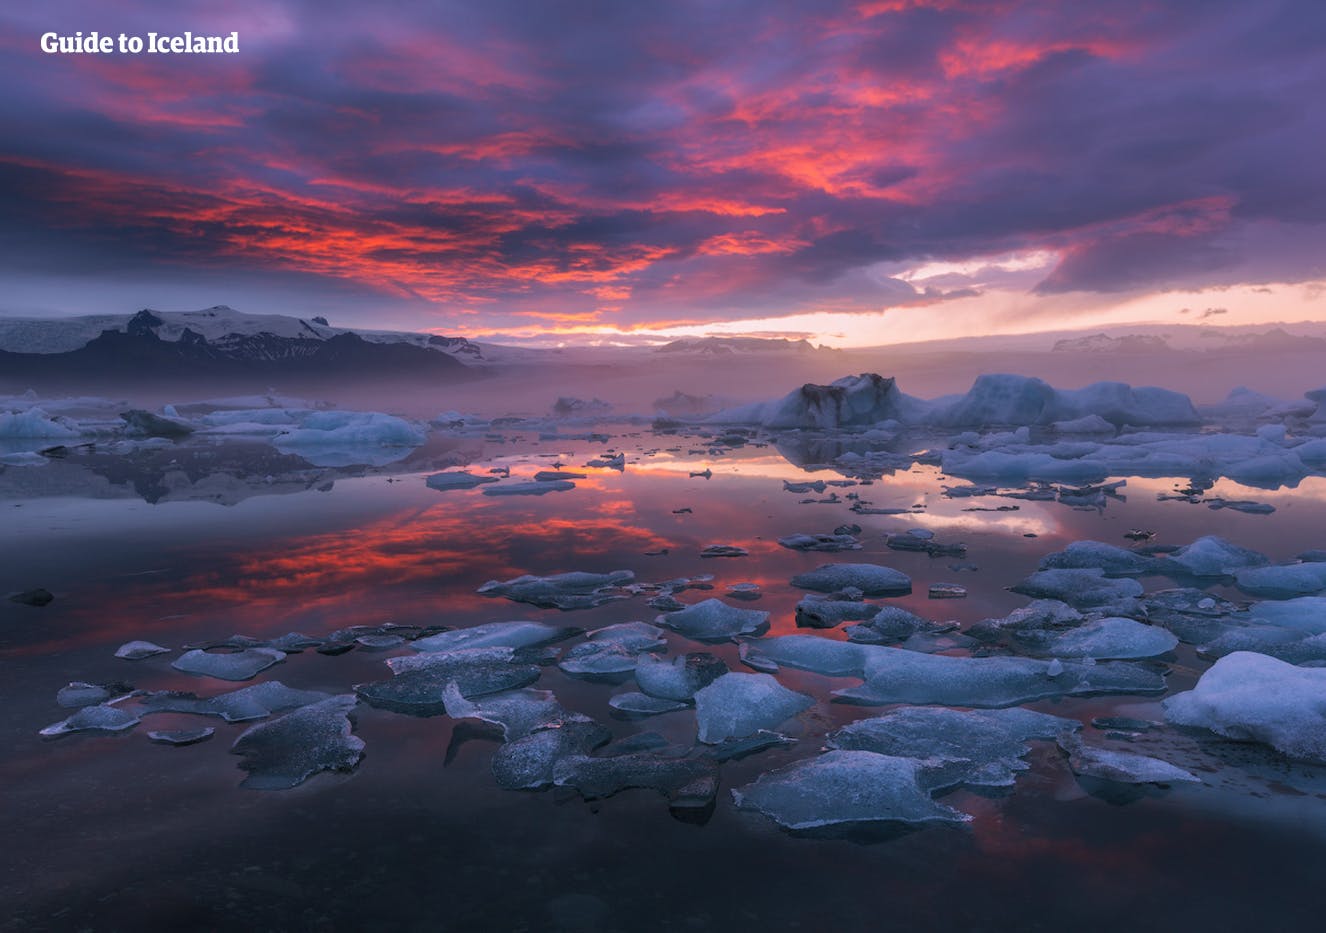 ทะเลสาบธารน้ำแข็งโจกุลซาลอนเป็นหนึ่งในสถานที่ท่องเที่ยวทางธรรมชาติที่สวยที่สุดในประเทศไอซ์แลนด์.